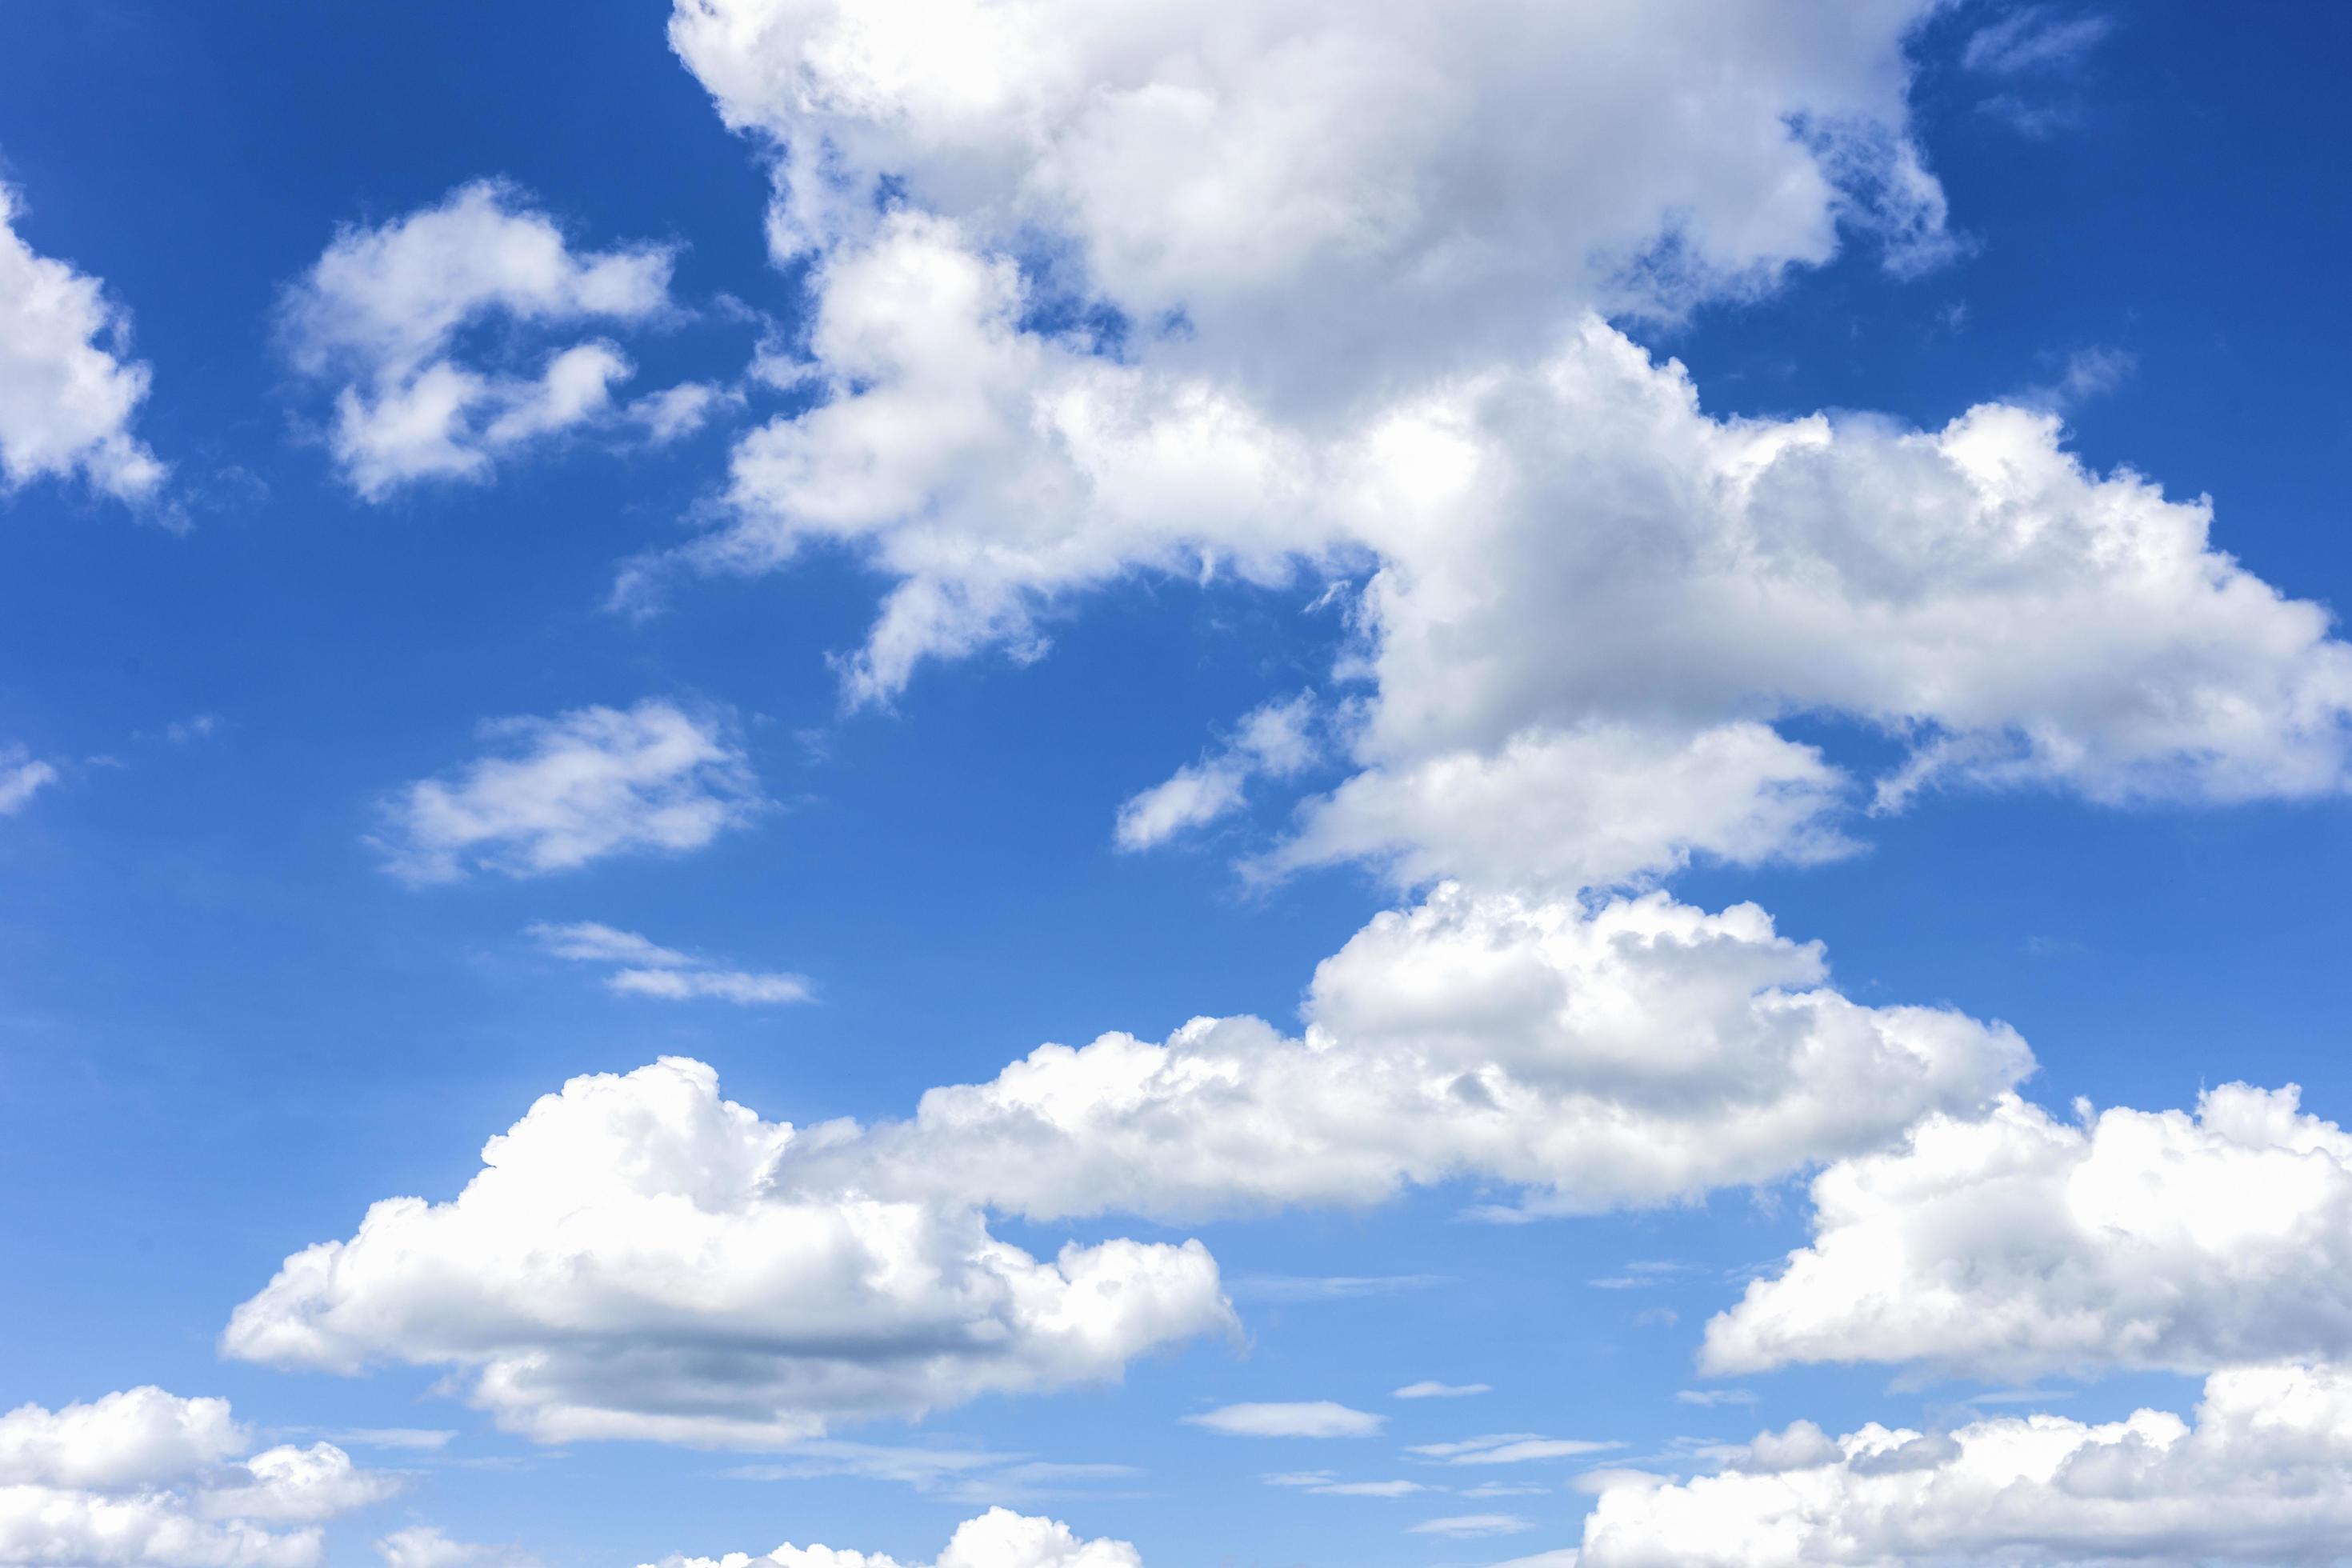 Không trung xanh trong suốt với mây trắng thông thường là sự kết hợp đẹp mắt giữa không trung xanh trong suốt và những đám mây trắng thuần khiết. Hãy chiêm ngưỡng và cảm nhận sự thanh bình và tuyệt vời khi cả hai yếu tố này hội tụ lại.